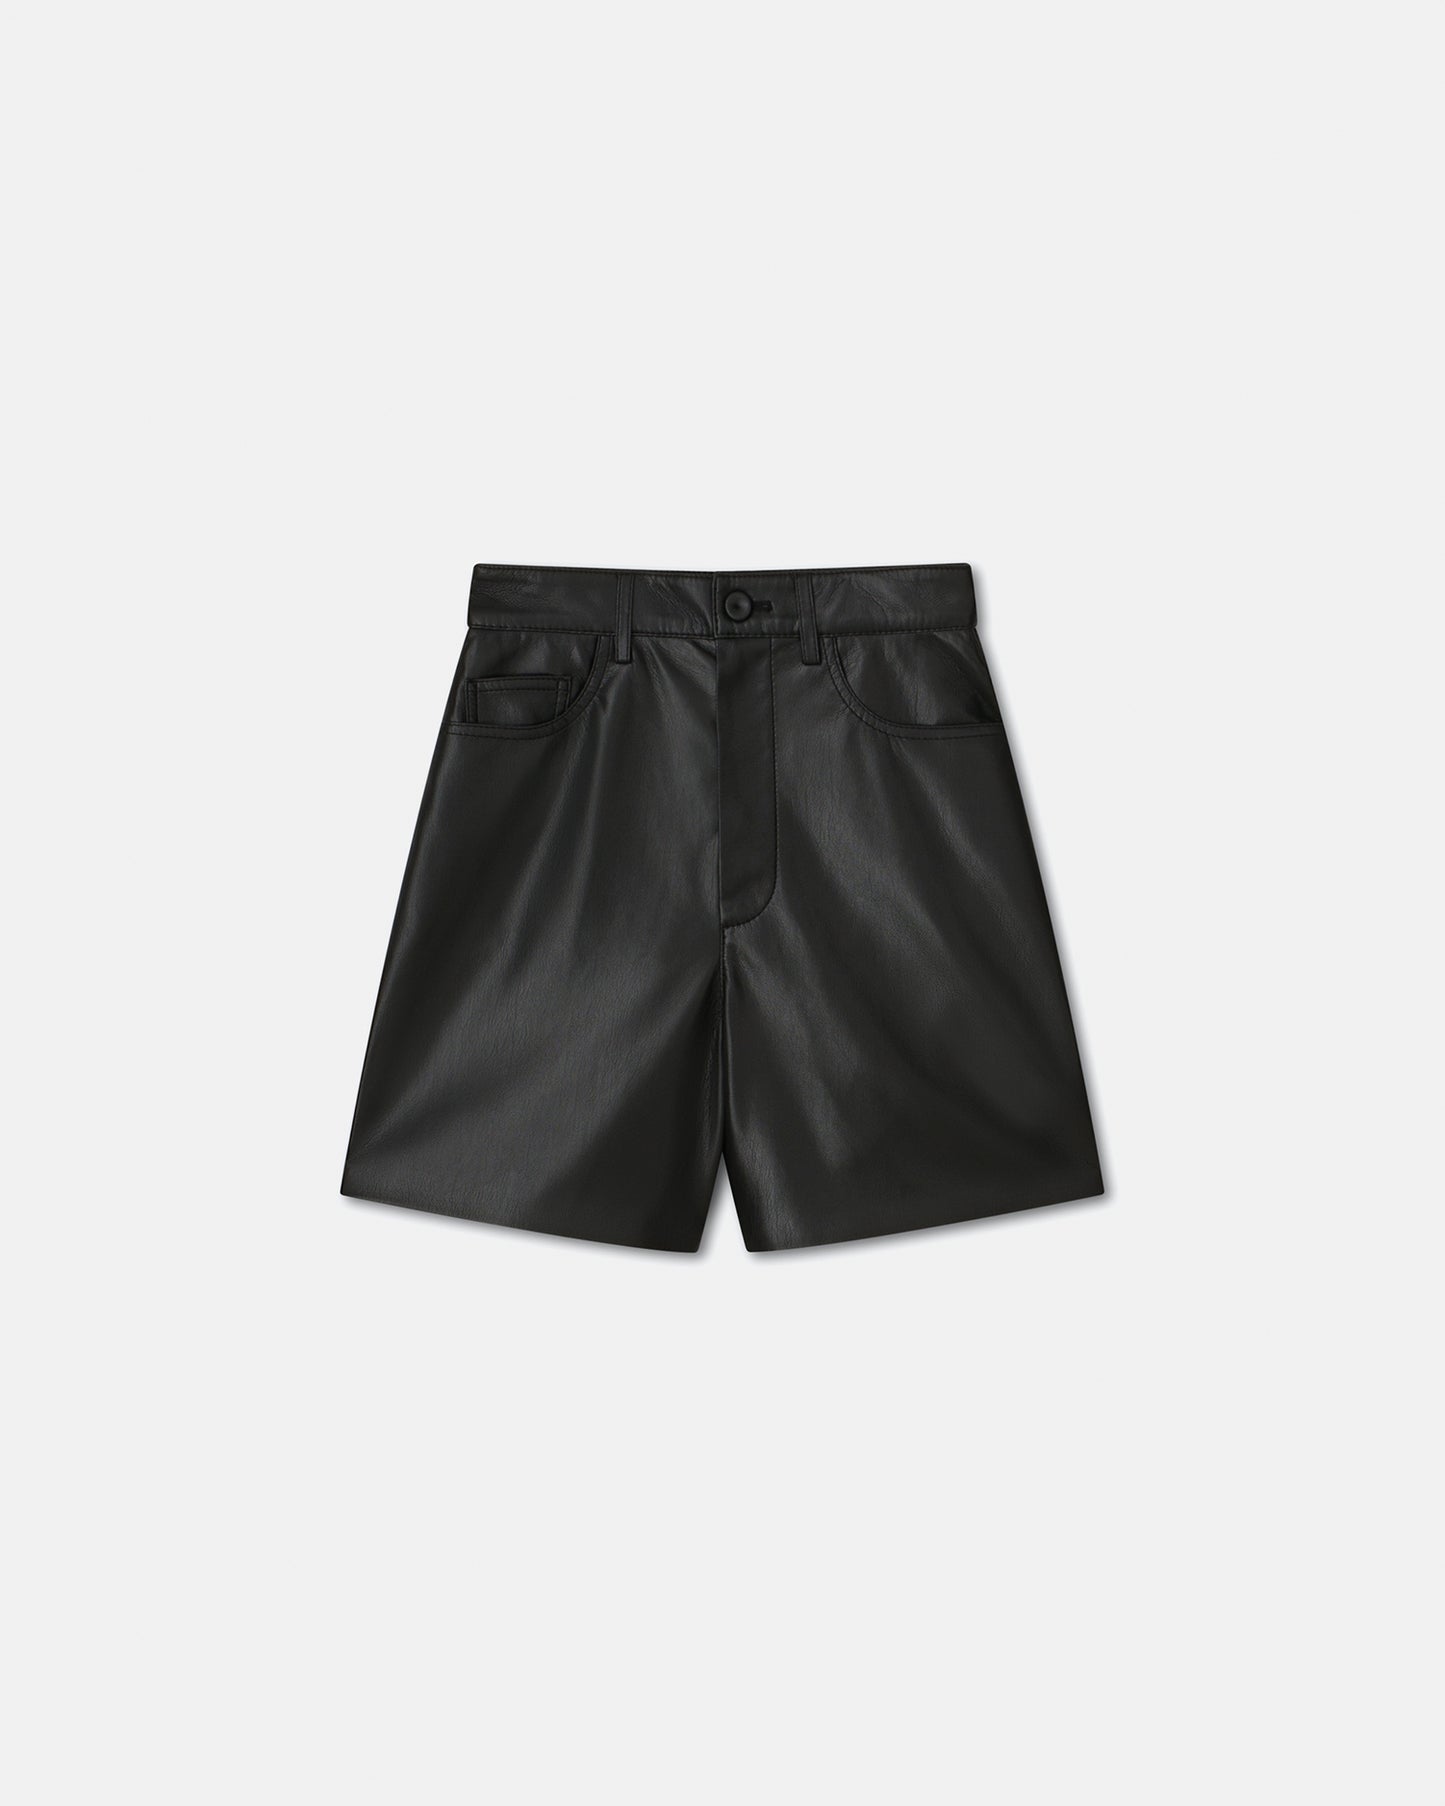 Leana - Okobor™ Alt-Leather Shorts - Black